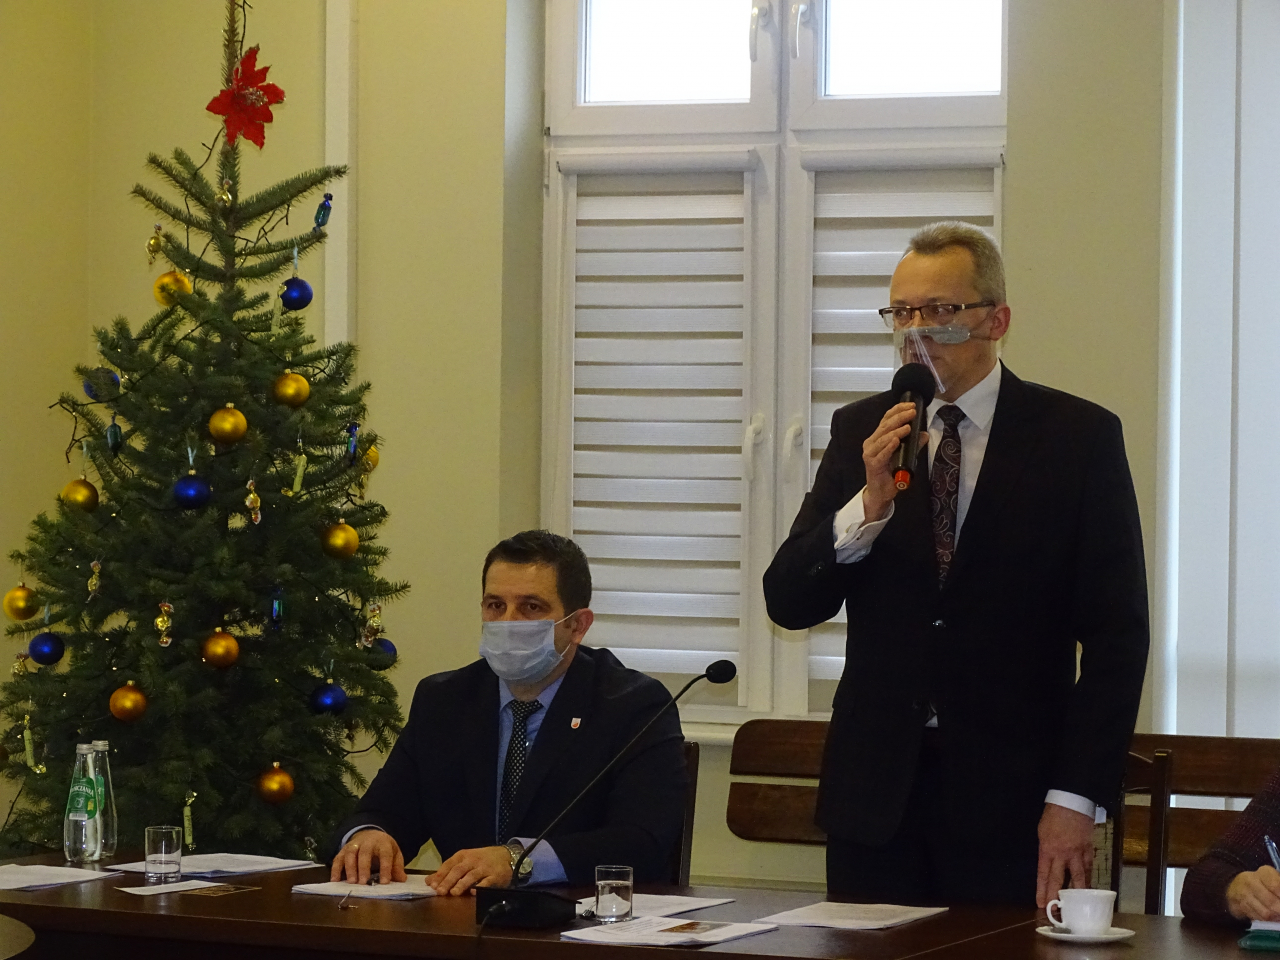 Burmistrz Arkadiusz Sulima  po odbytym głosowaniu podziękował radnym za zaufanie i przyjęcie budżetu na 2021 rok.